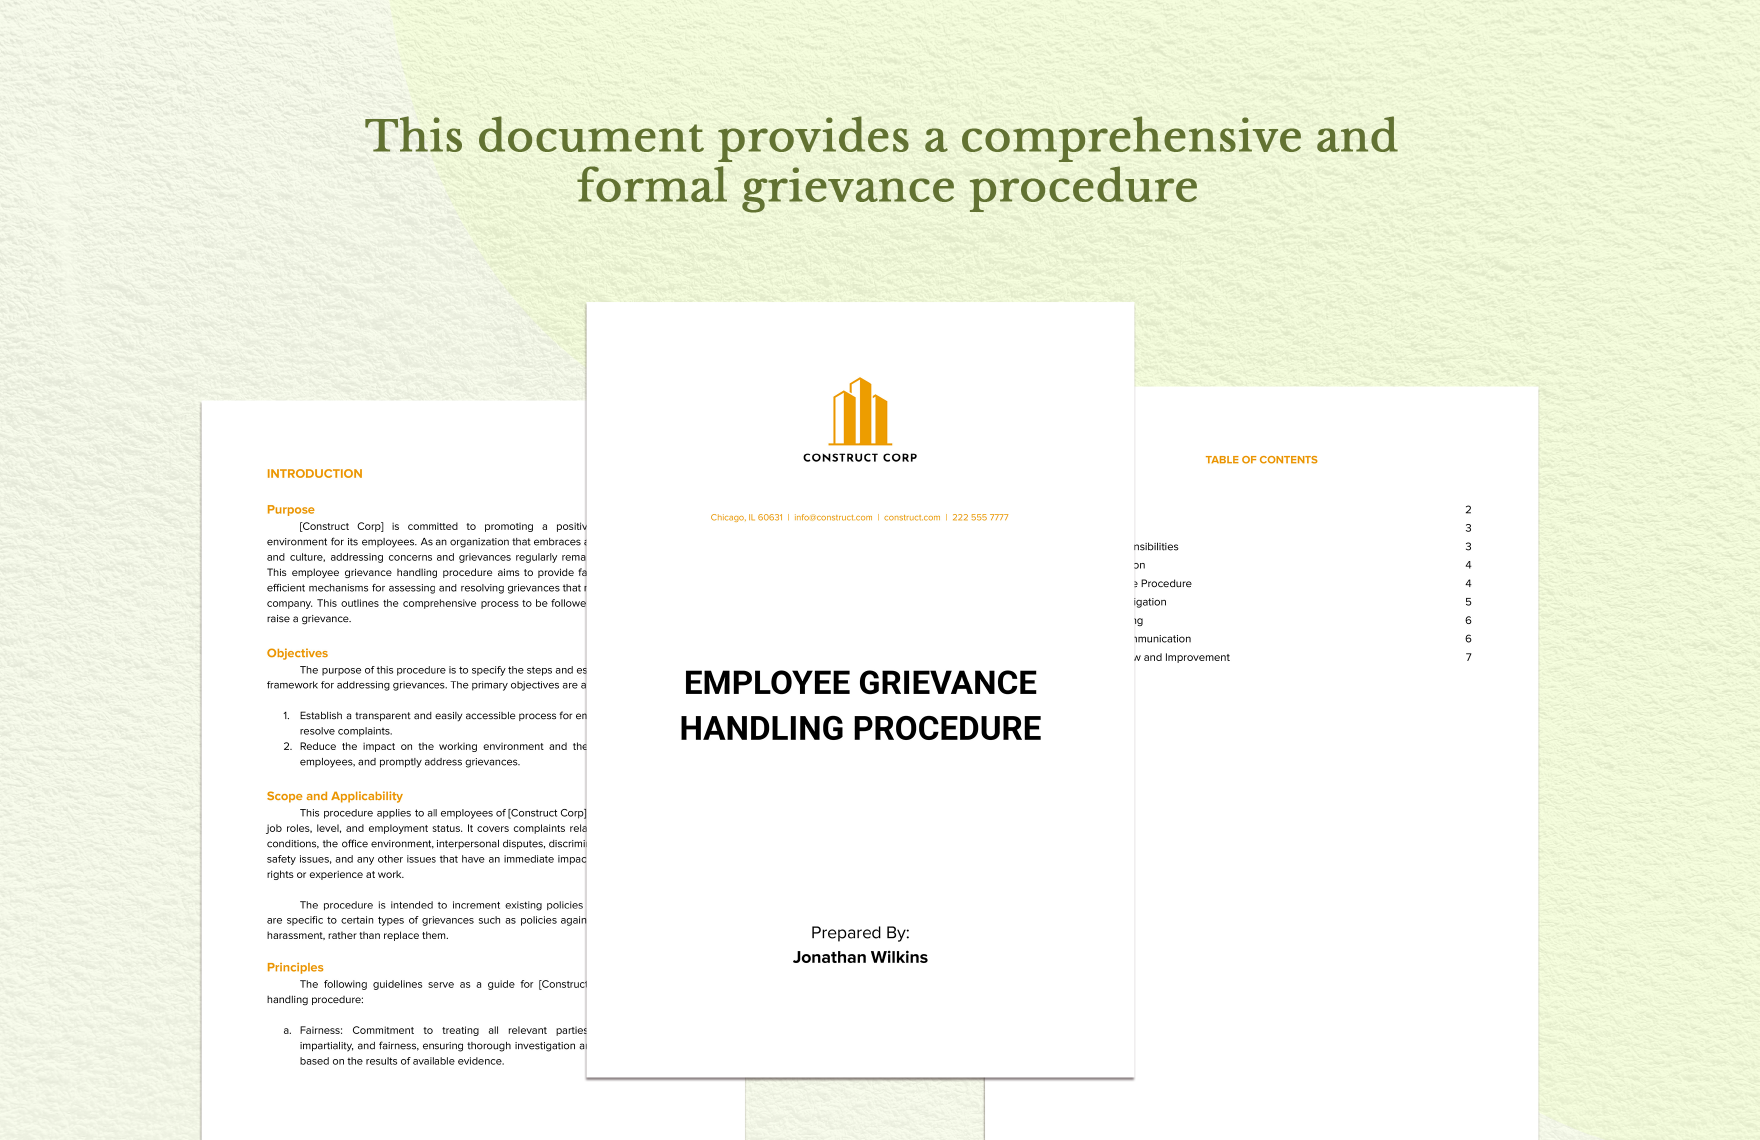 Employee Grievance Handling Procedure